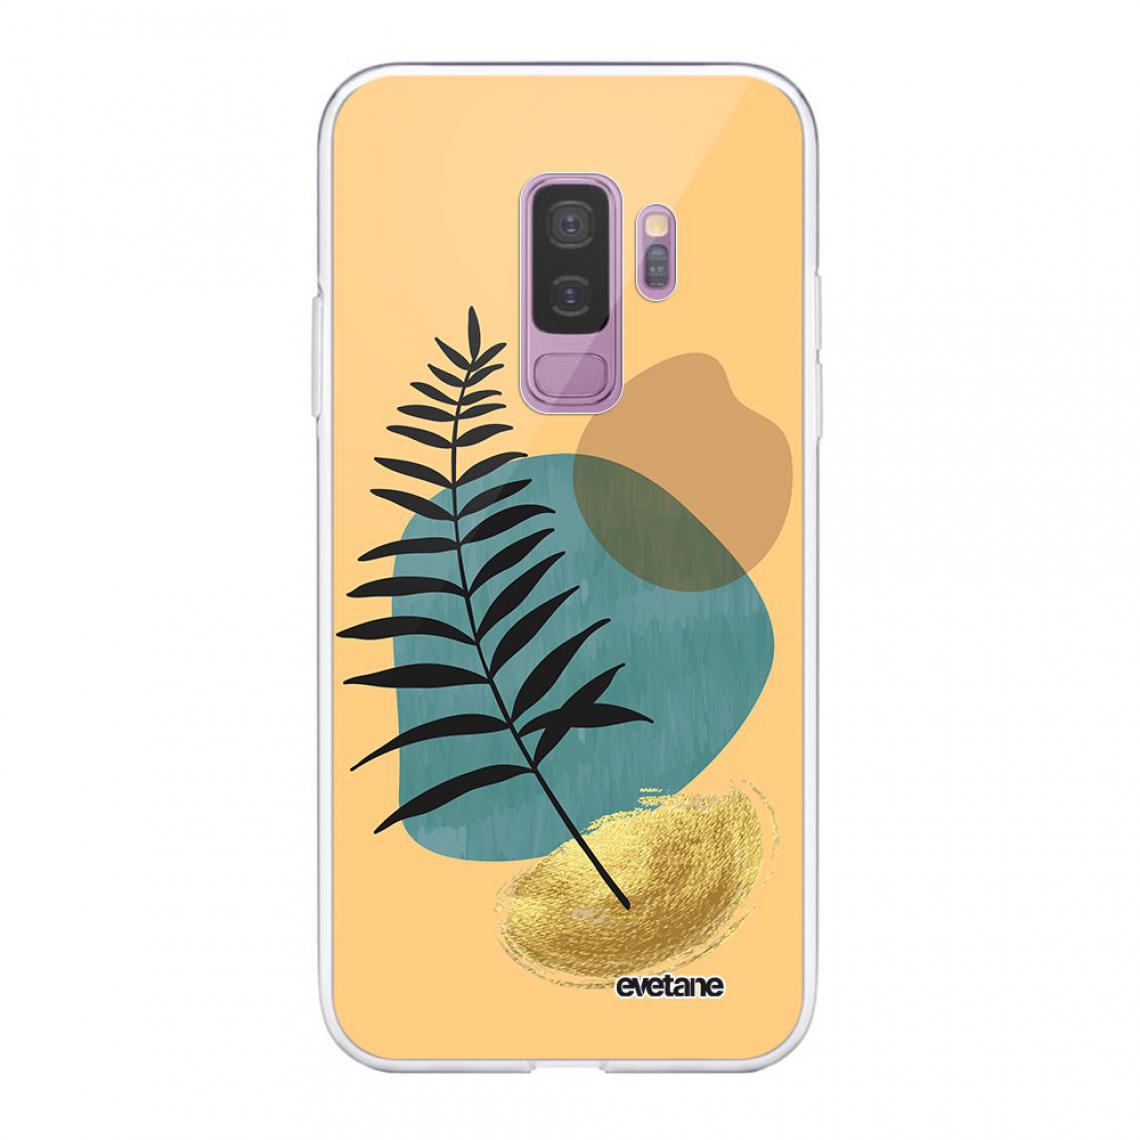 Evetane - Coque Samsung Galaxy S9 Plus souple silicone transparente - Coque, étui smartphone